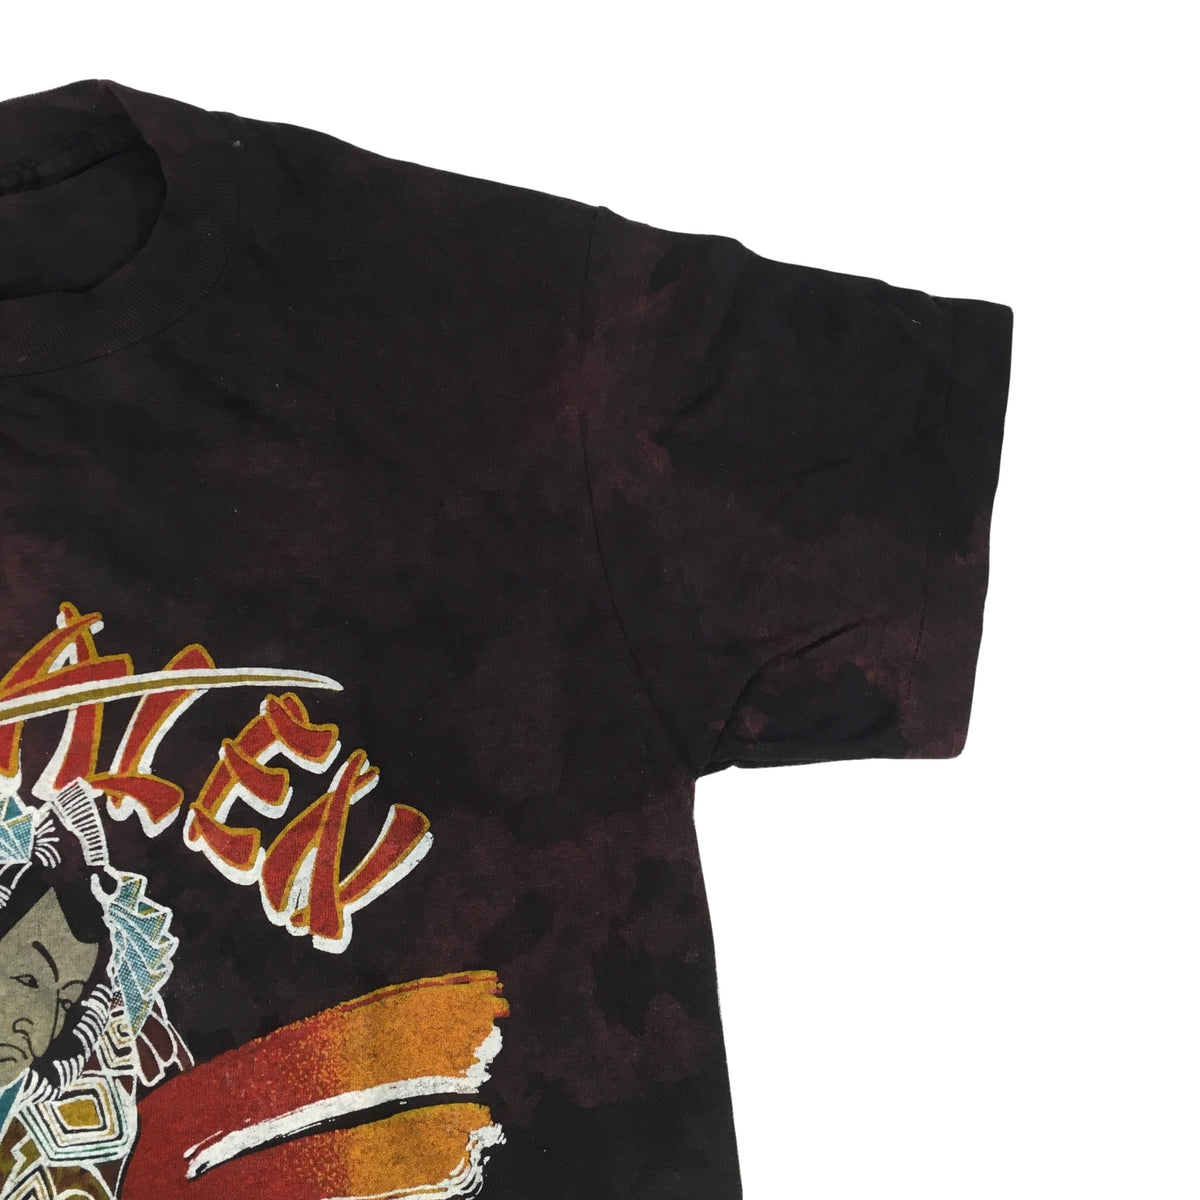 Vintage Van Halen &quot;1984&quot; T-Shirt - jointcustodydc